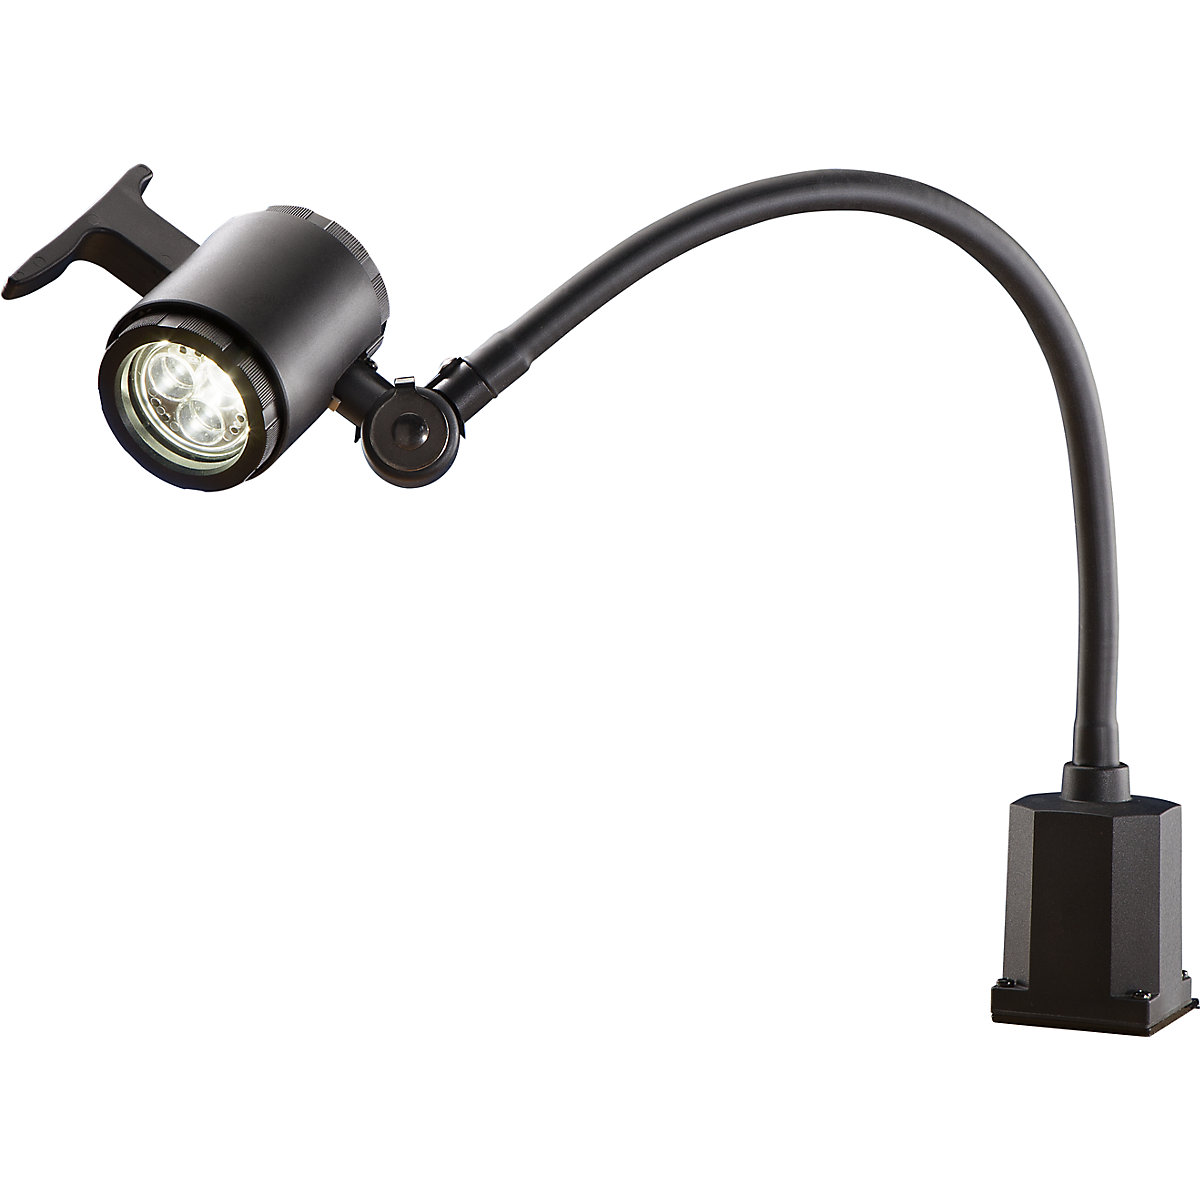 Lámpara de brazo flexible para IP65: tensión de conexión 100 – 240 V | KAISER+KRAFT